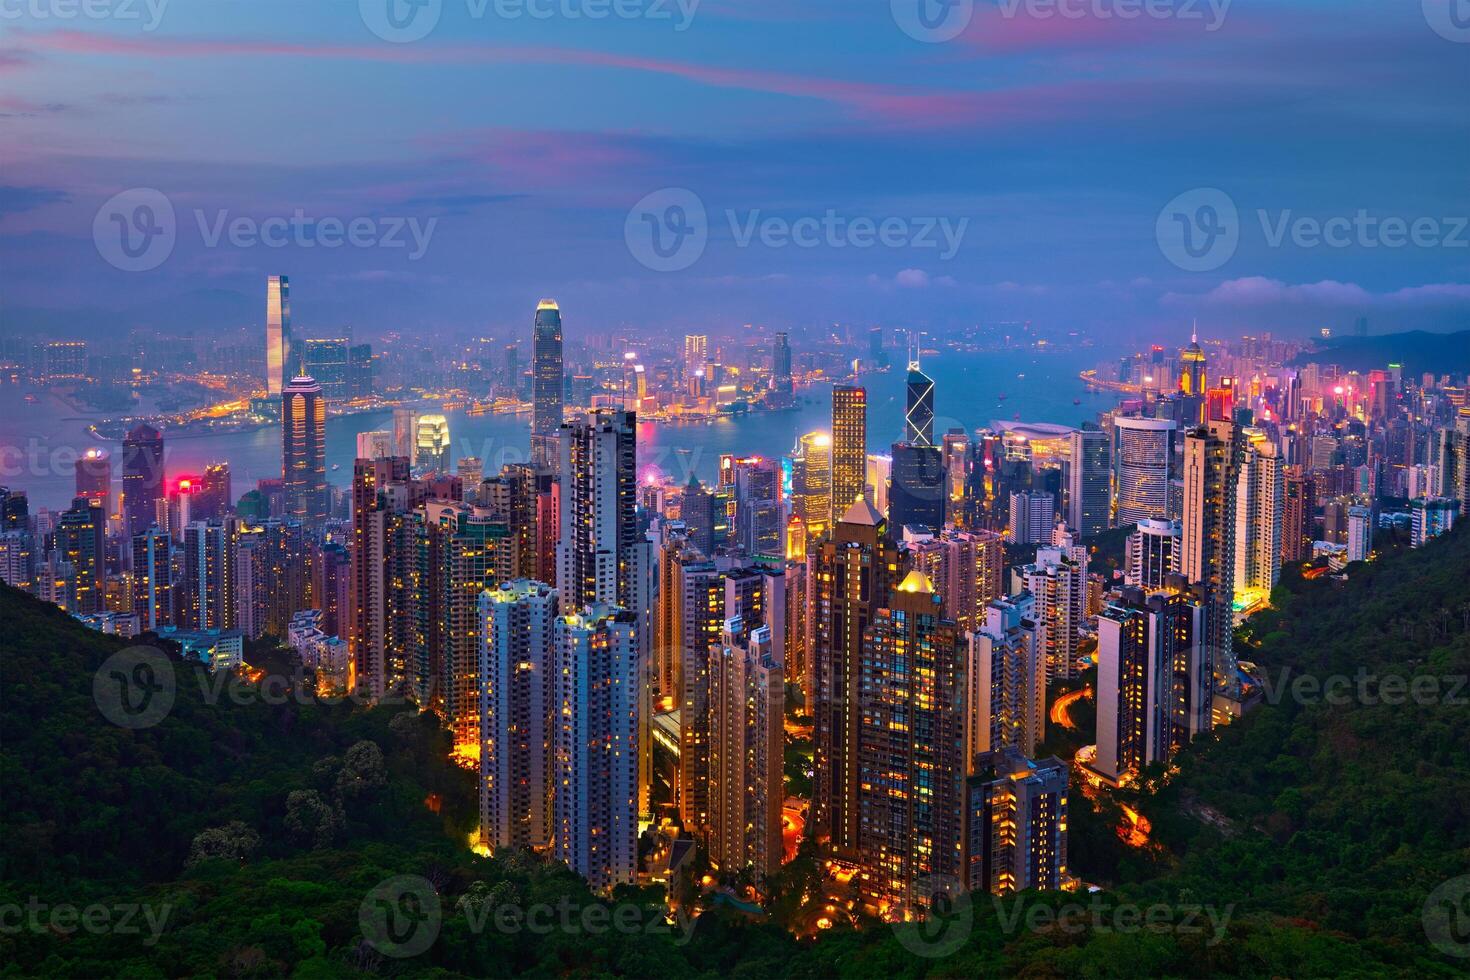 hong kong rascacielos horizonte paisaje urbano ver foto